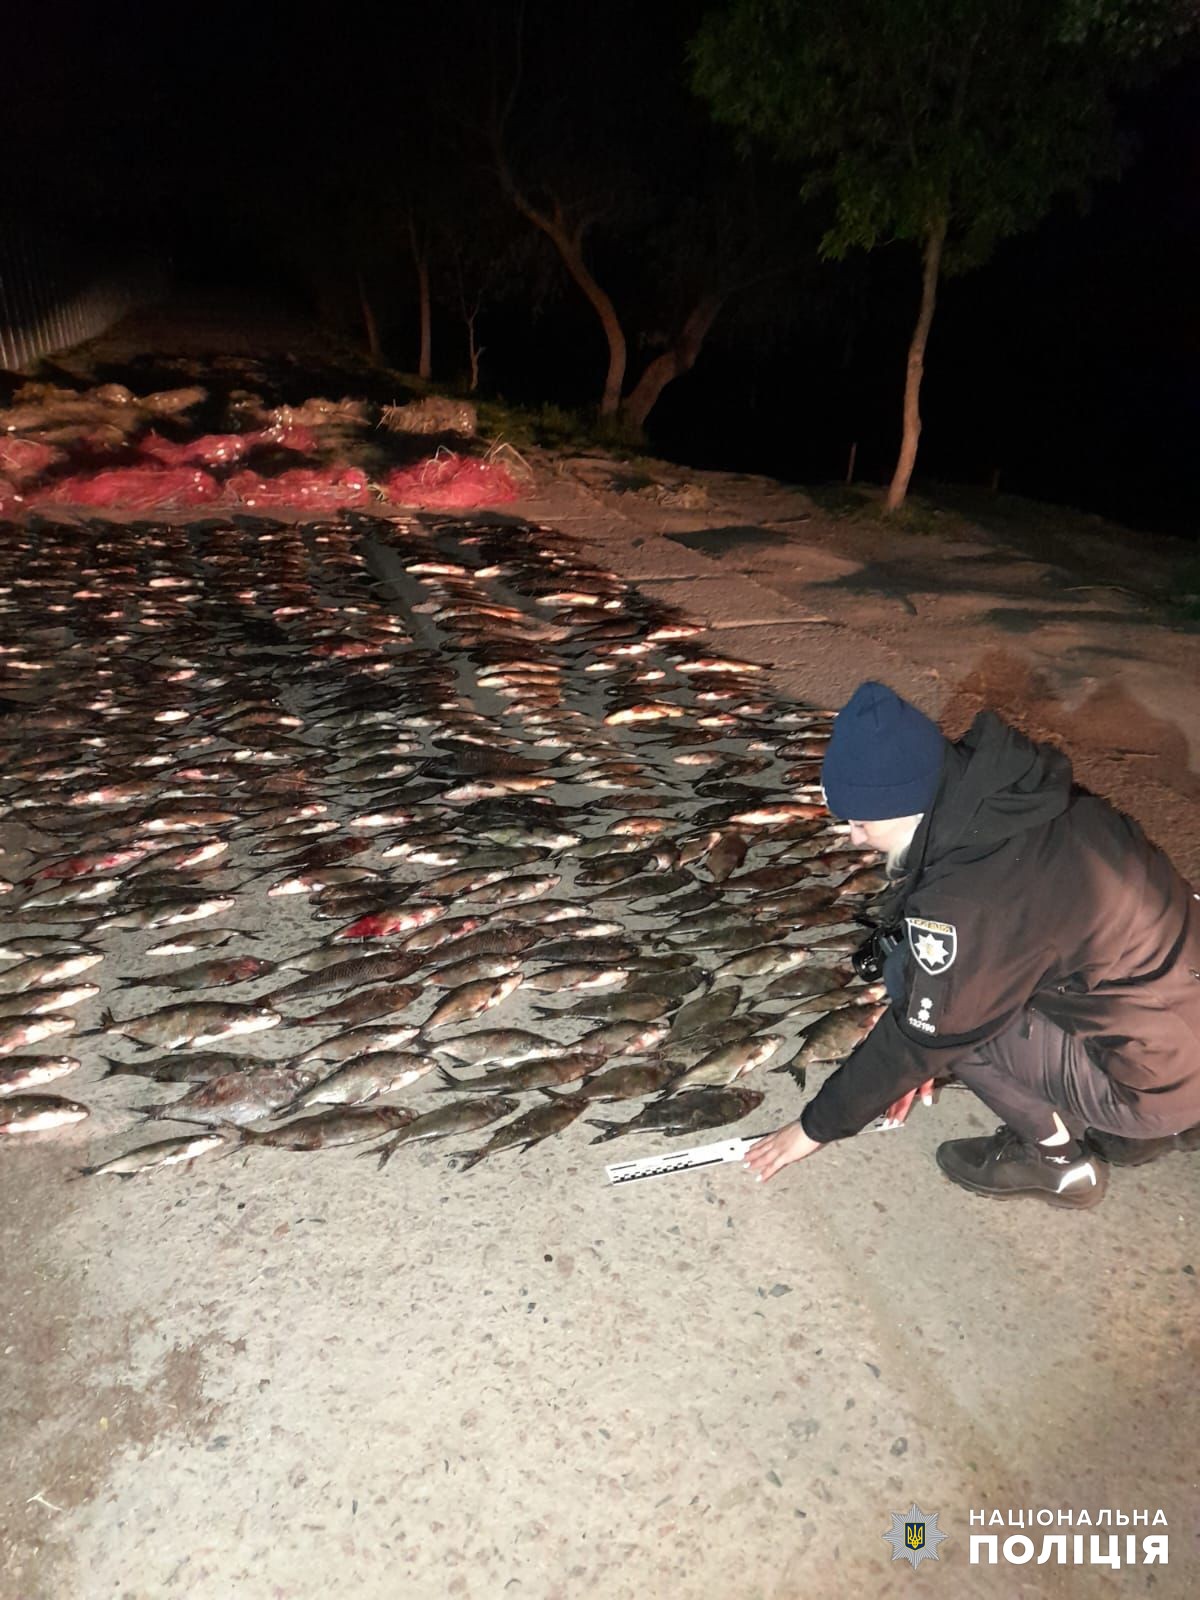 Жители Сафьяновской общины наловили рыбки более чем на 100 тысяч гривен